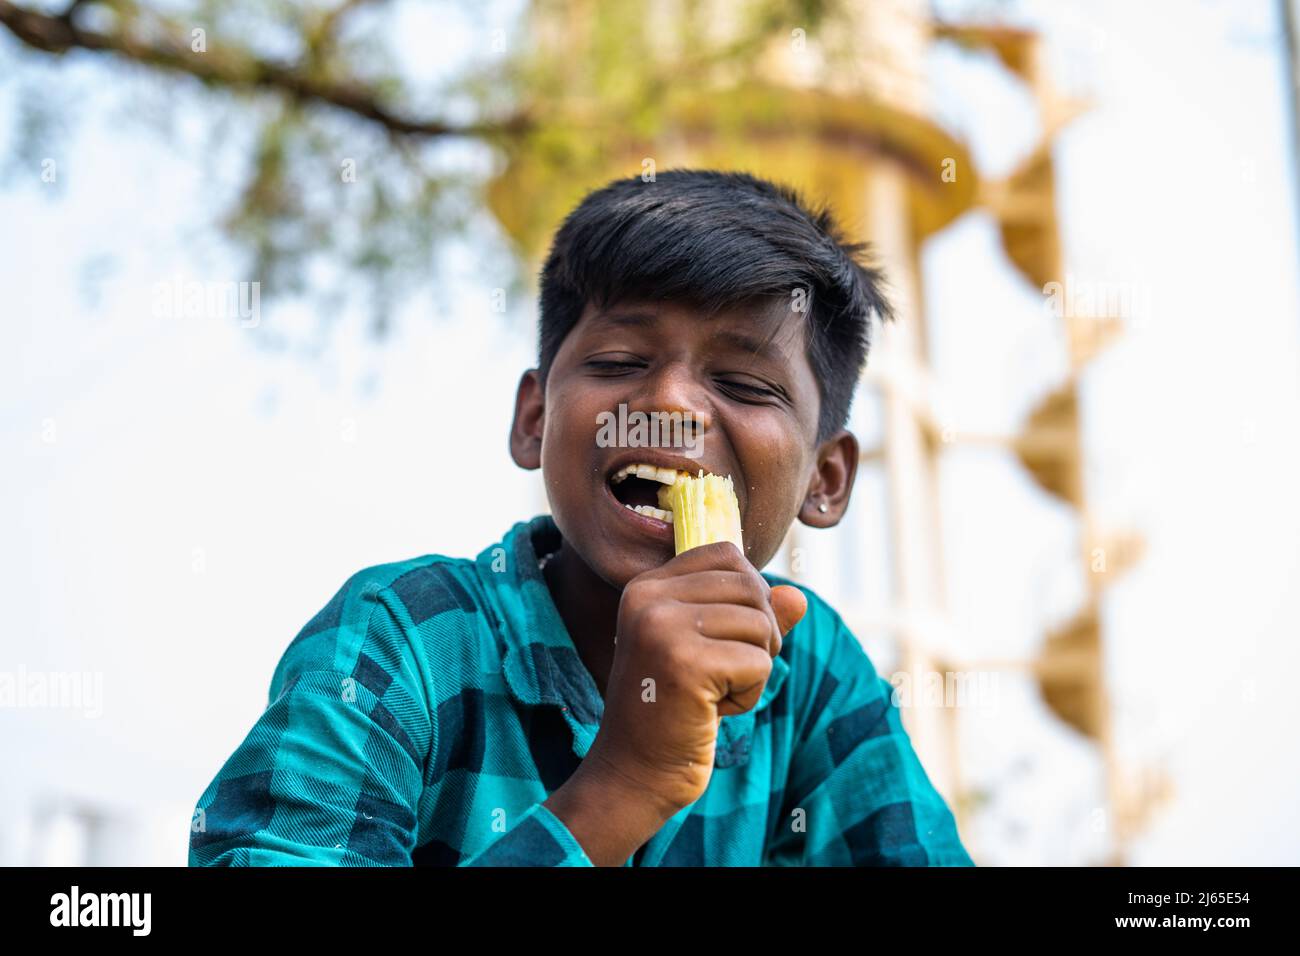 Villaggio bambino teenger mangiare la canna da zucchero in terra coltivata - concetto di stili di vita infantile, la sanità e la povertà. Foto Stock